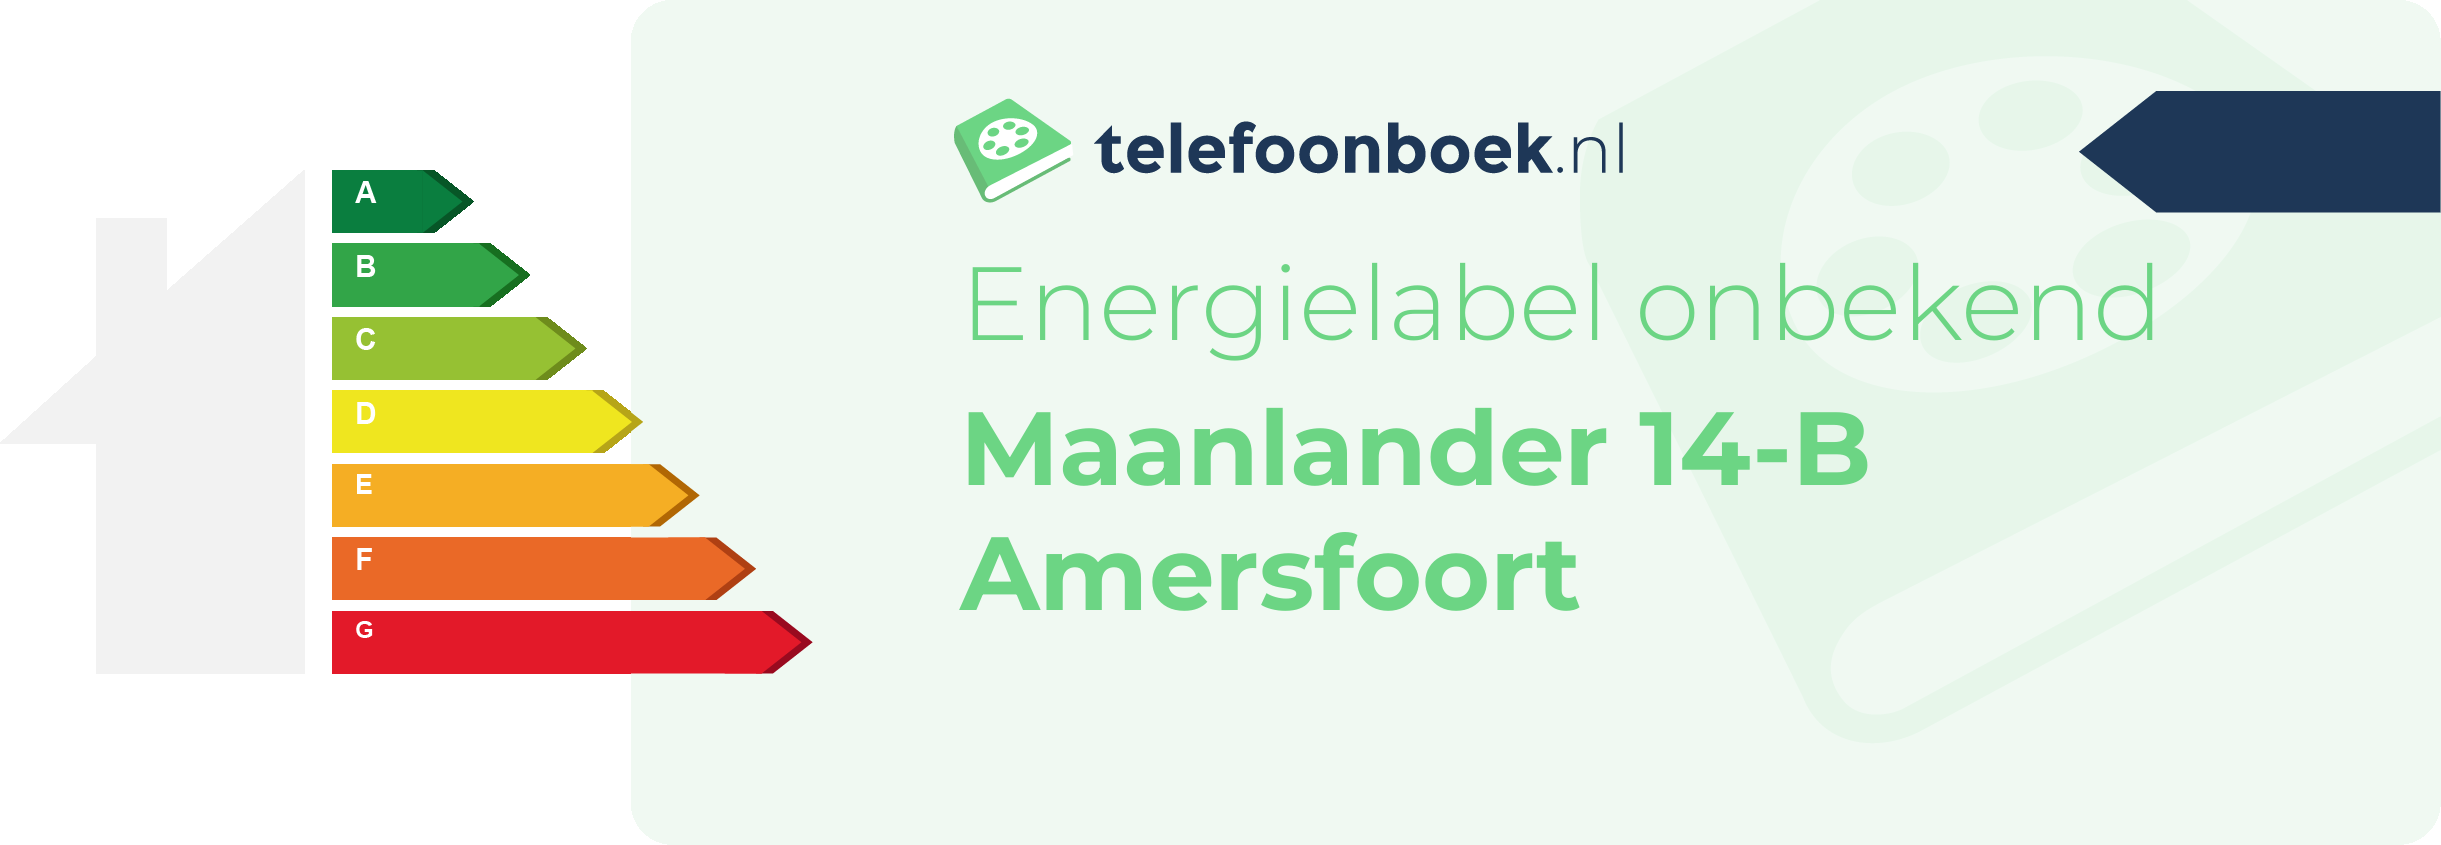 Energielabel Maanlander 14-B Amersfoort